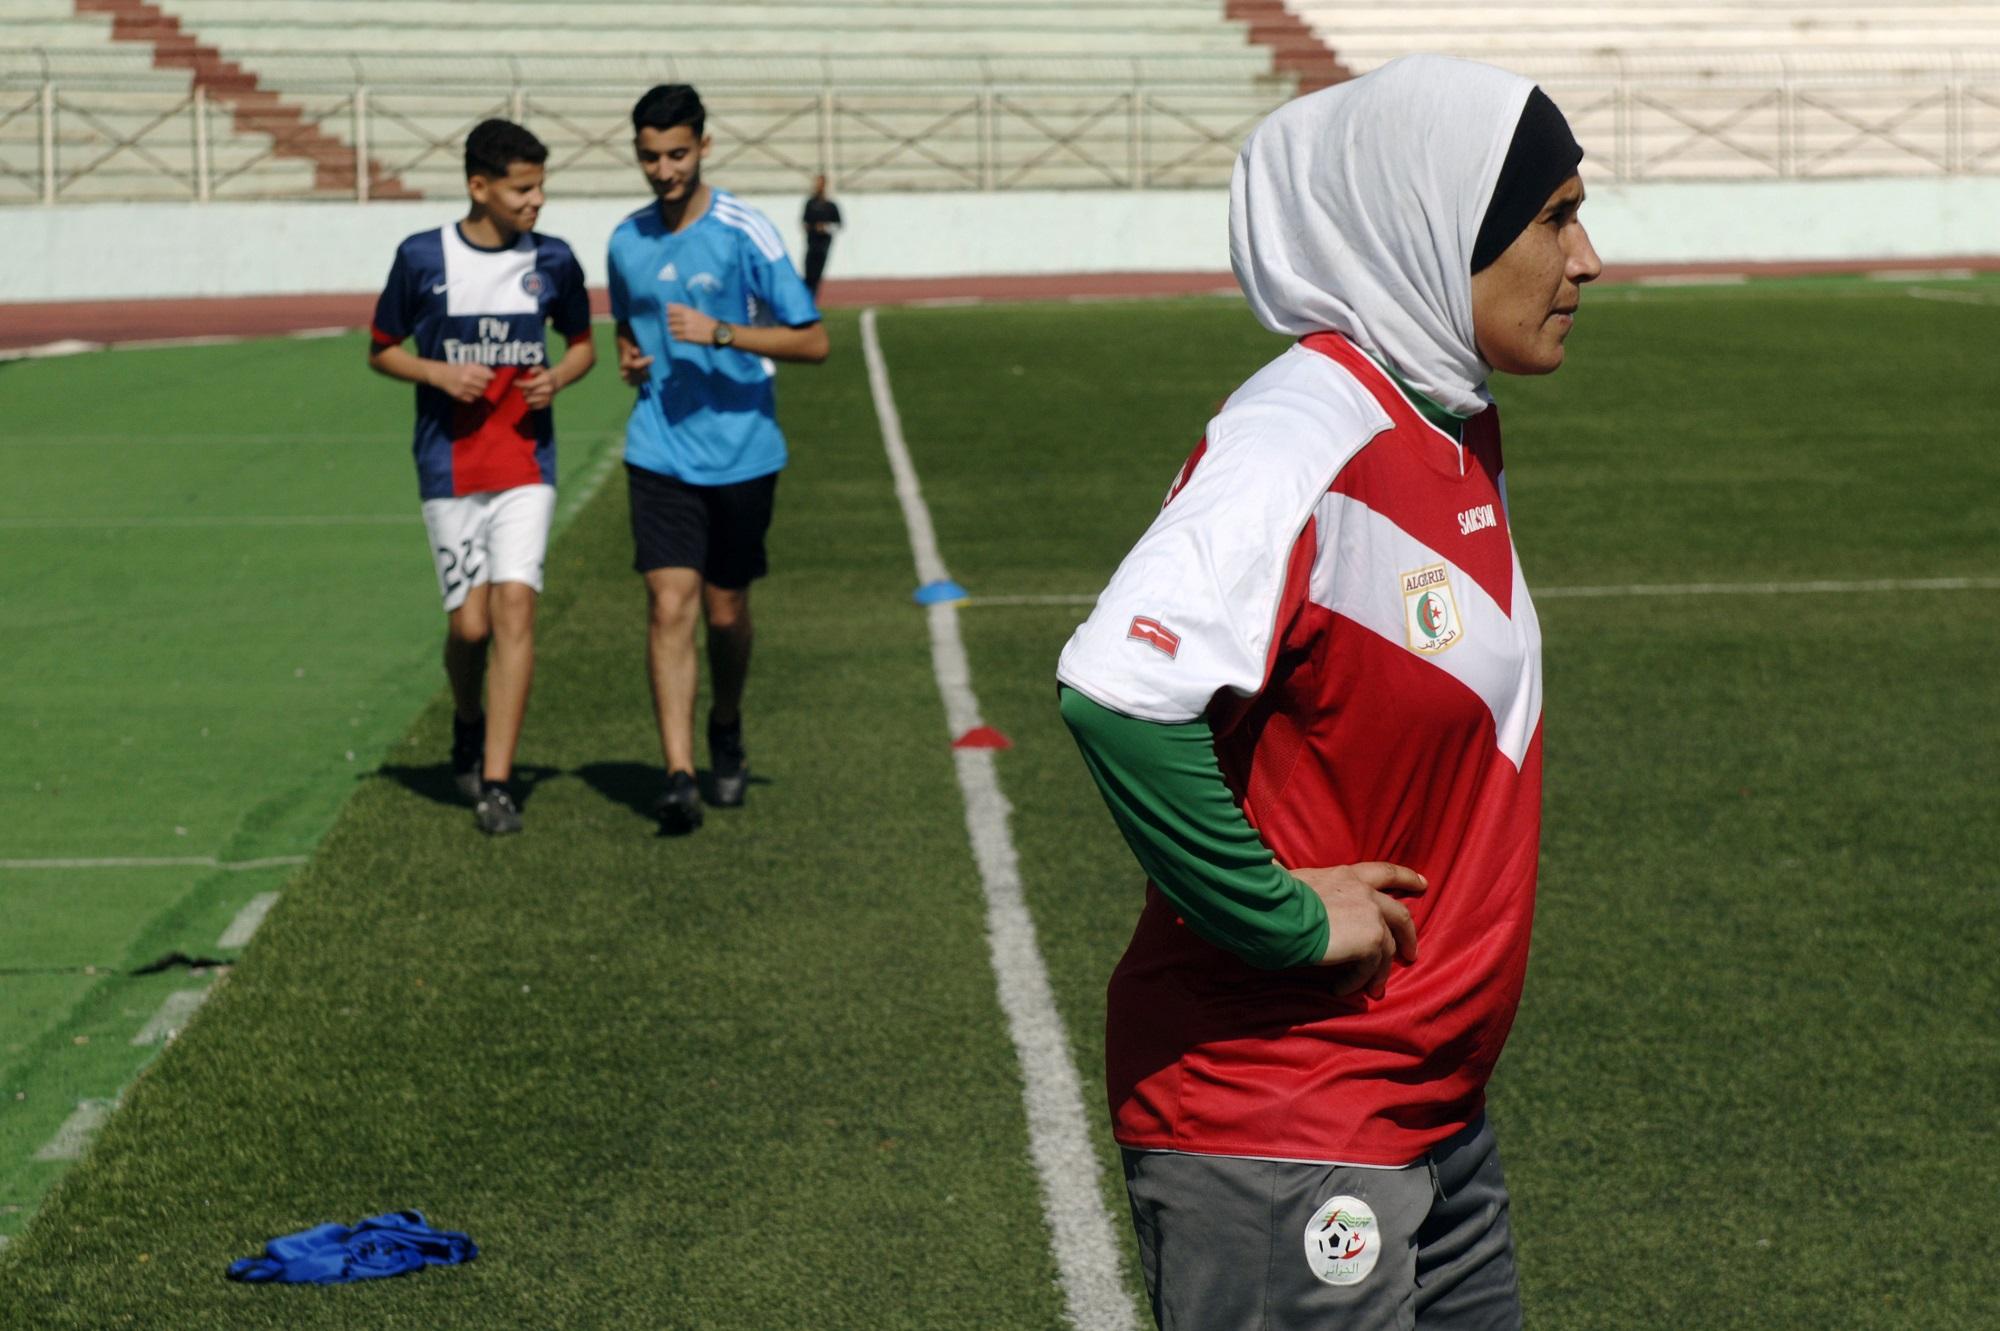 Keltoum Arabi Aouda, jugadora del ‘Afak Relizane’, el equipo de fútbol que ha dominado en este país musulmán durante la presente década, entrena con la cabeza cubierta. Foto AFP.